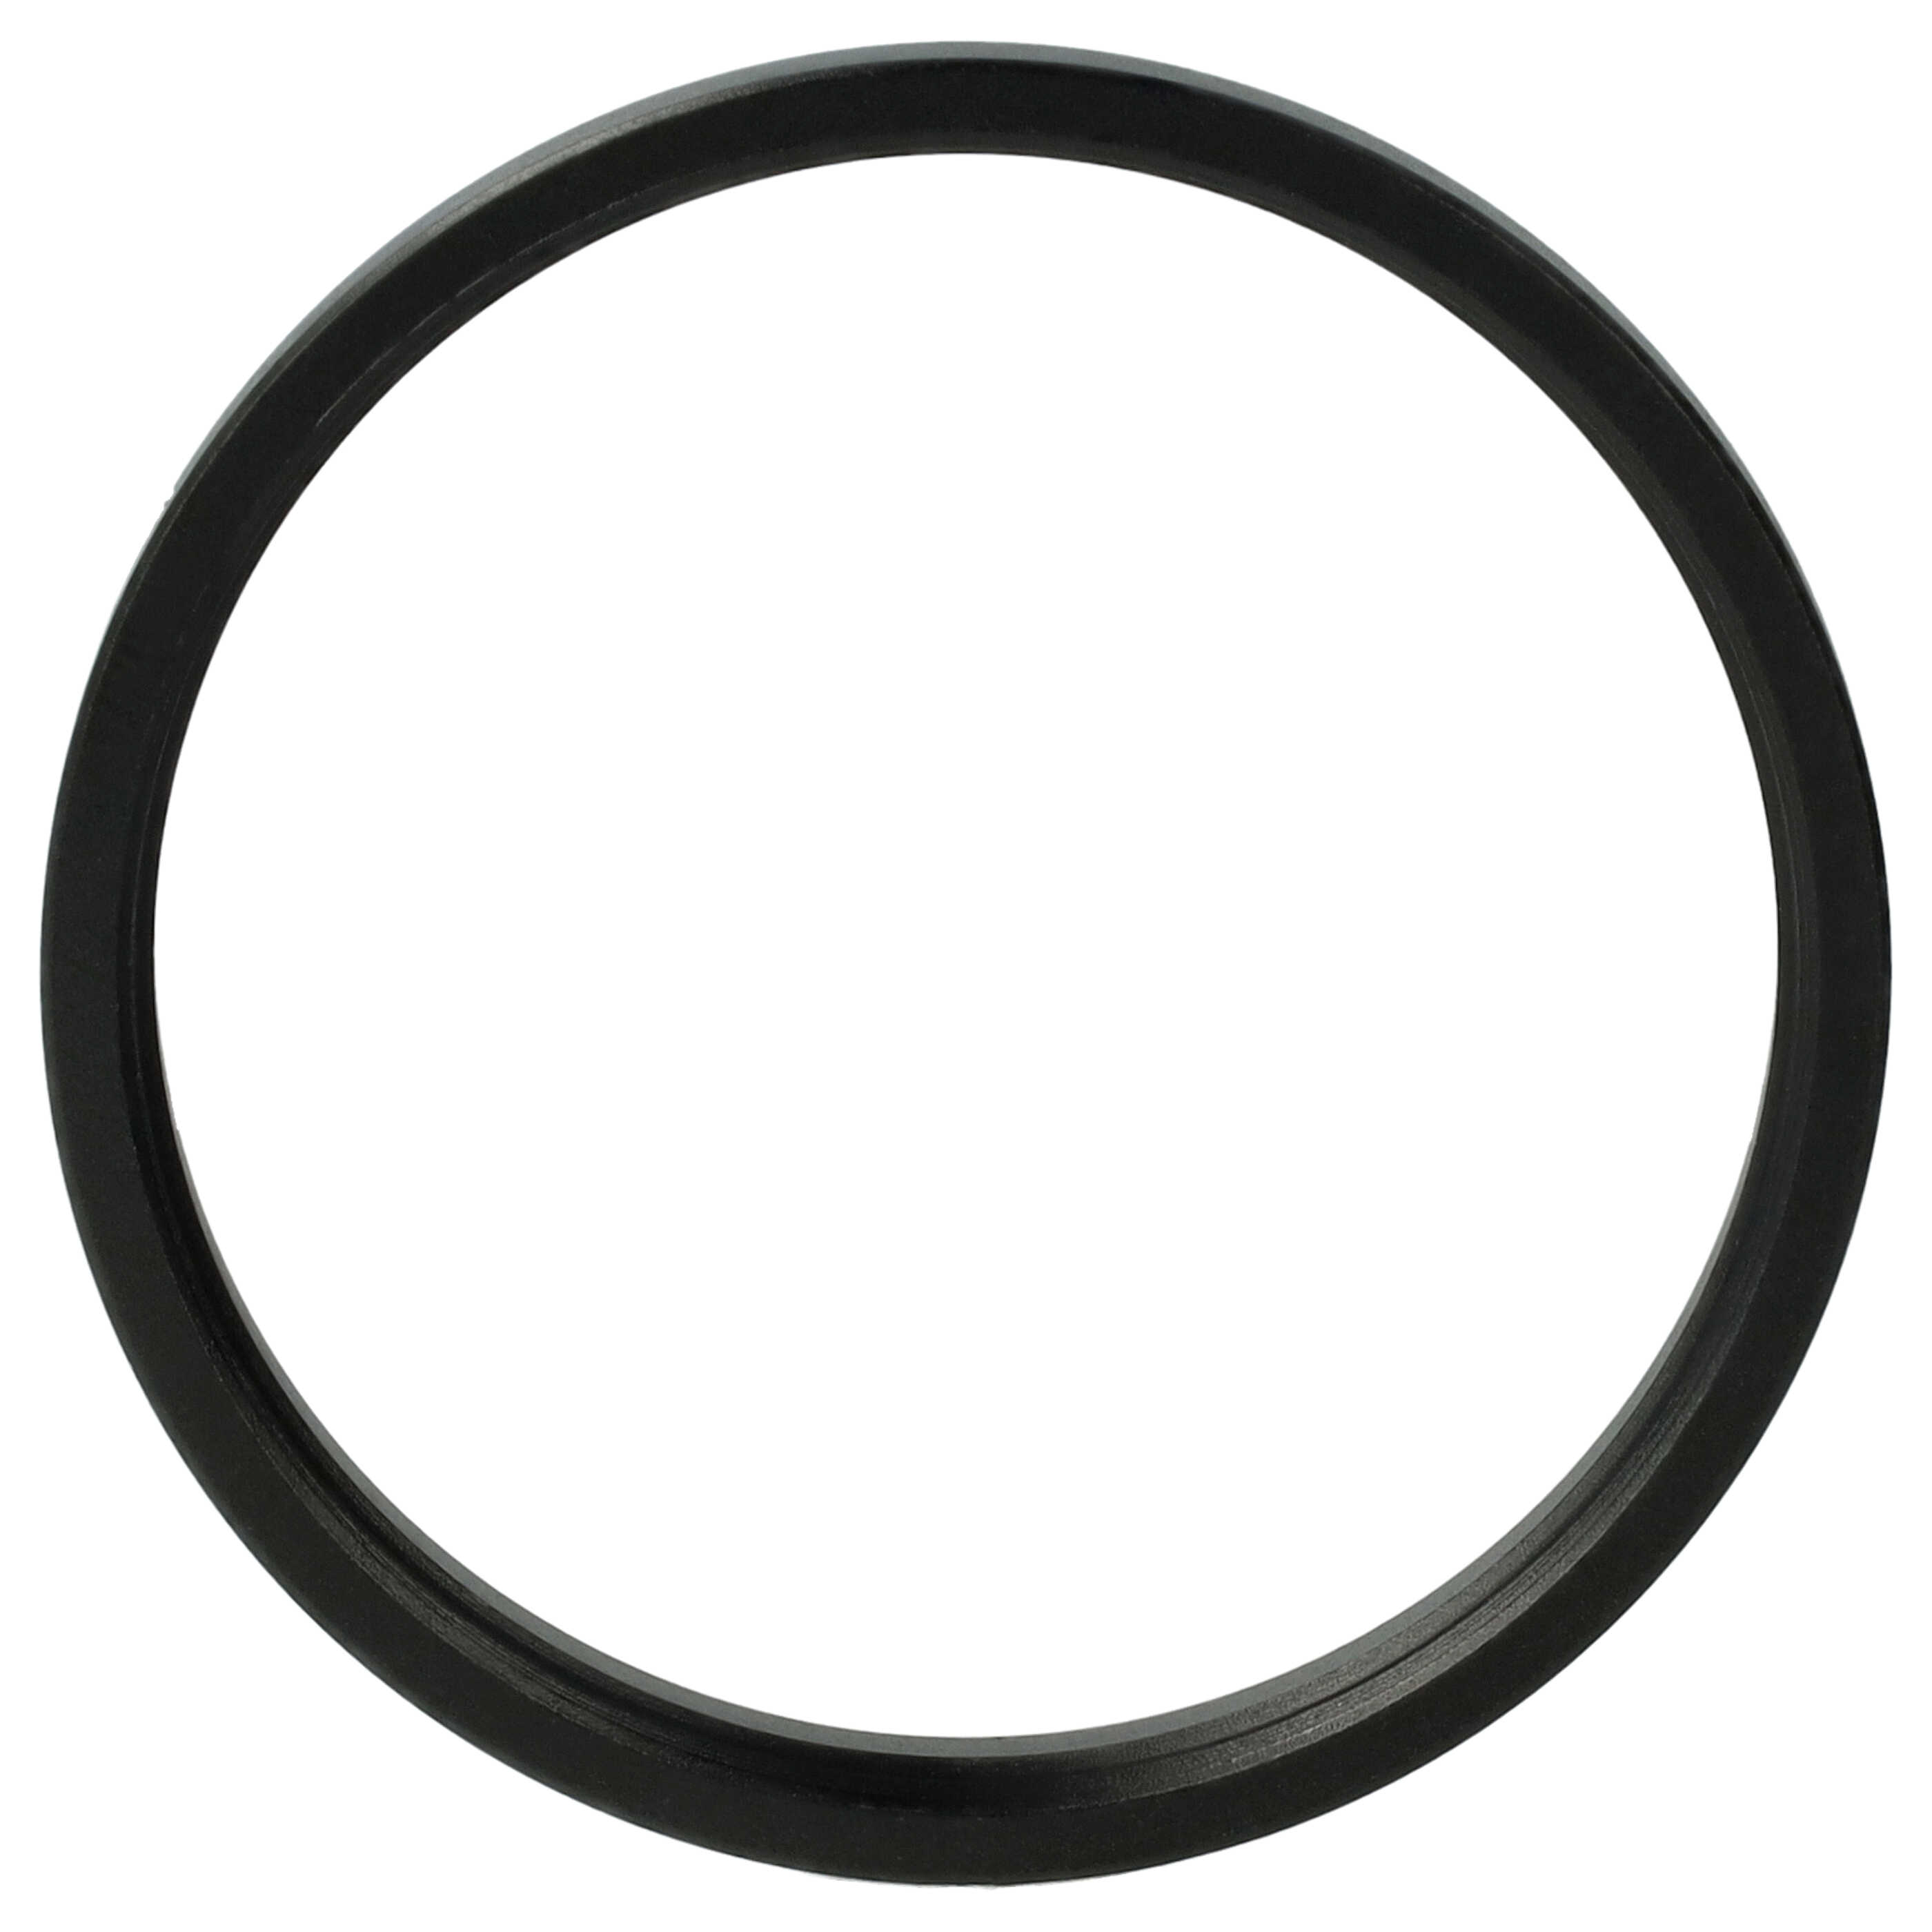 Anello adattatore step-down da 42 mm a 40,5 mm per obiettivo fotocamera - Adattatore filtro, metallo, nero